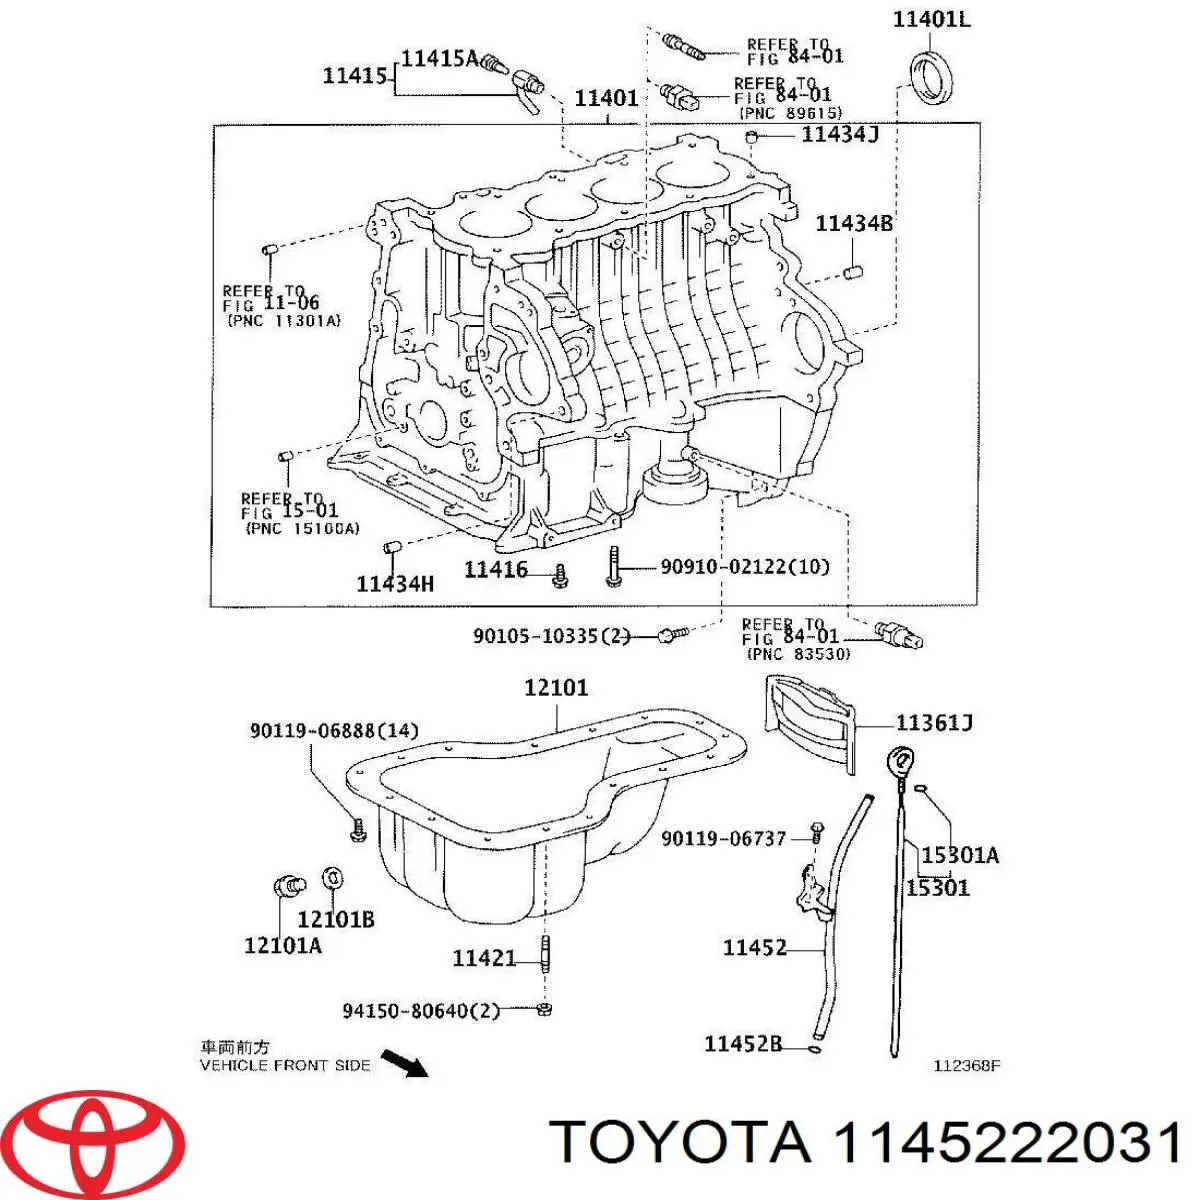 Направляющая щупа-индикатора уровня масла в двигателе на Toyota Corolla VERSO 